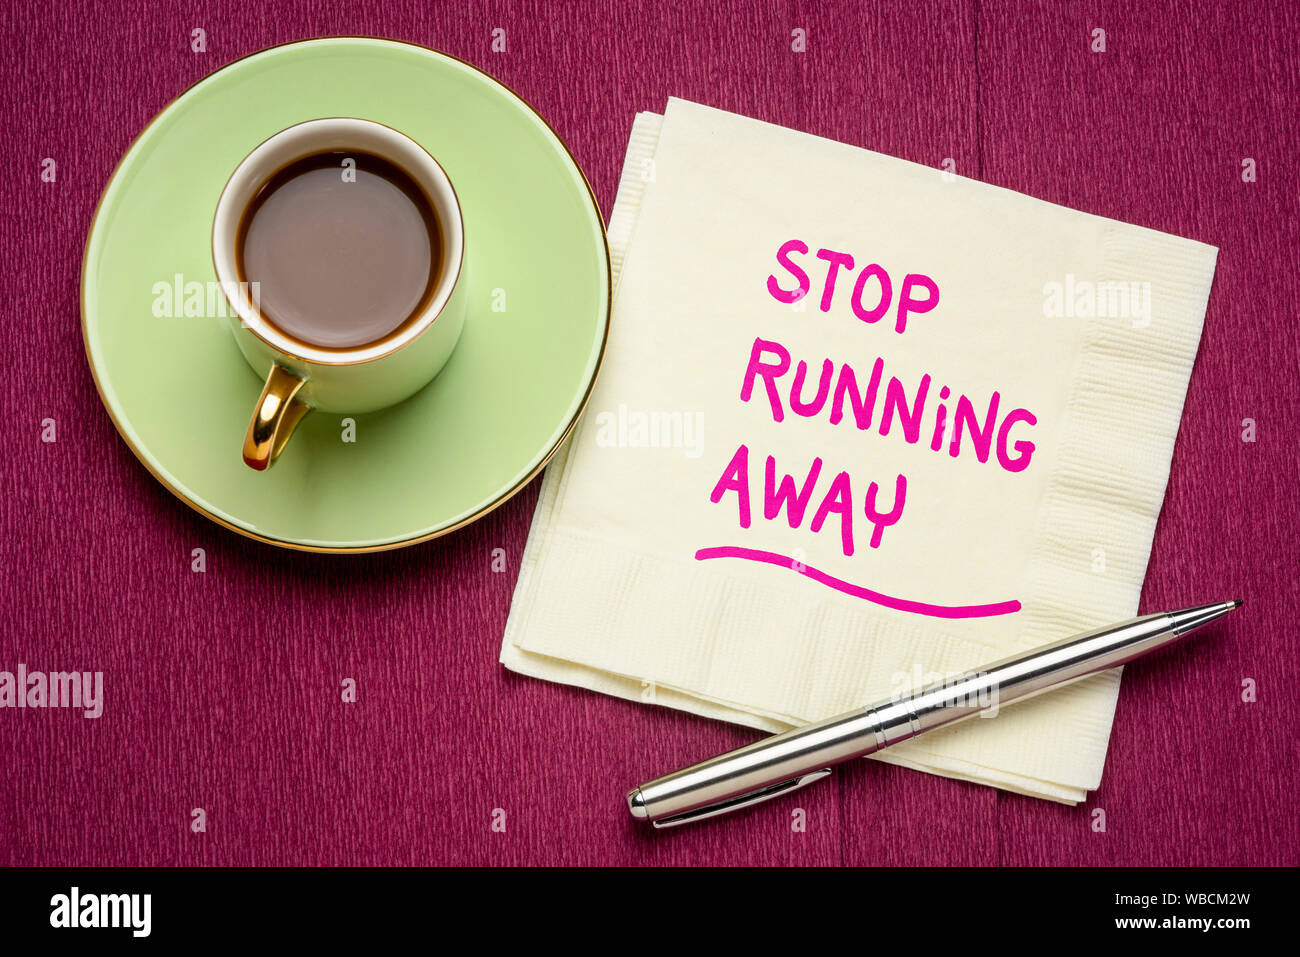 Haltestelle laufen - motivierende Handschrift auf eine Serviette mit einer Tasse Kaffee Stockfoto